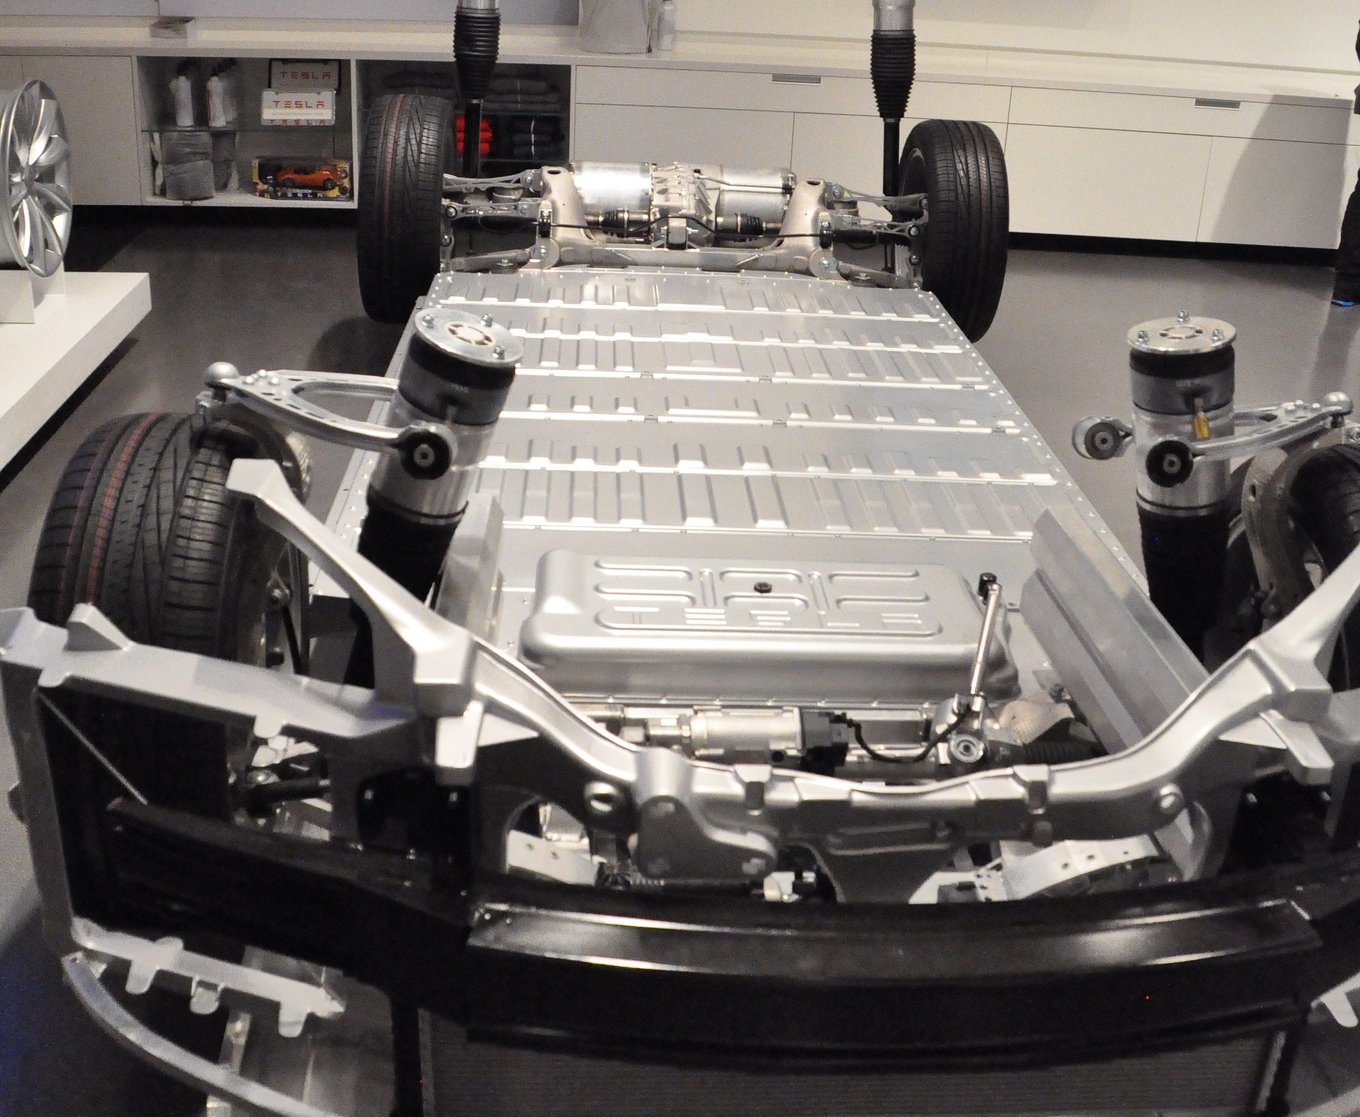  Tesla  Model S Battery  Swap Pilot Program Online Soon in 